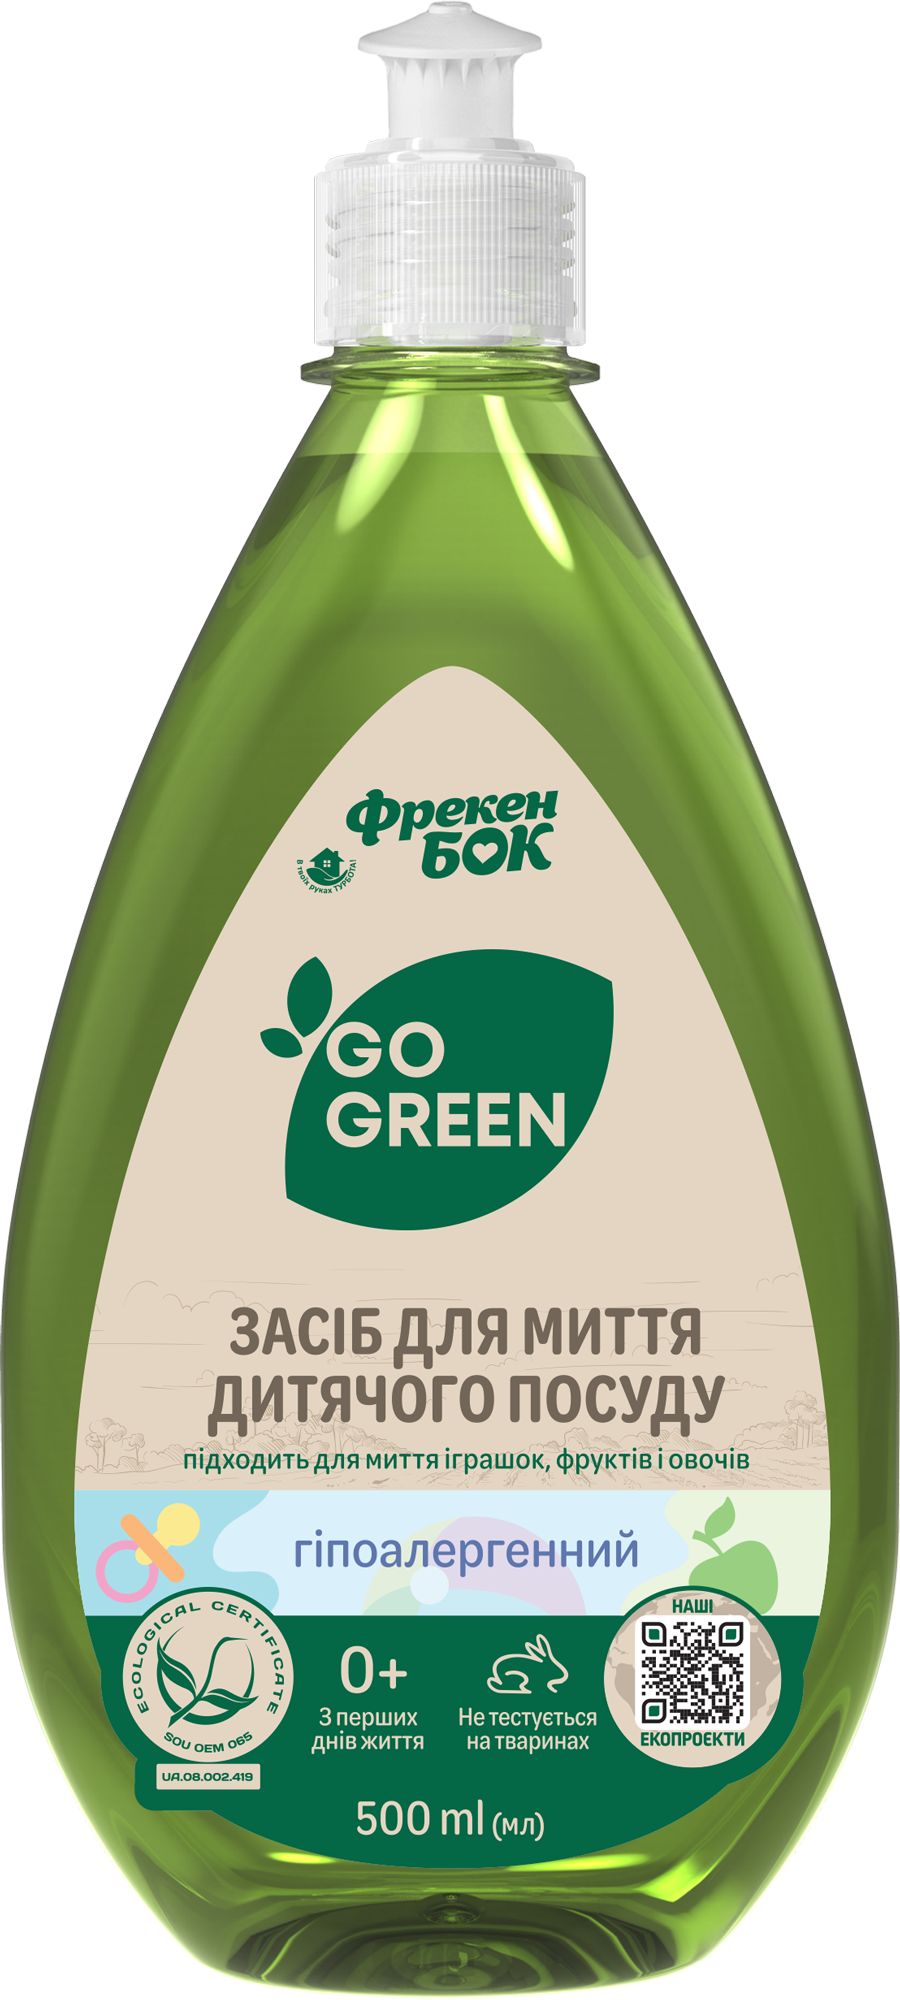 Гипоаллергенное средство для мытья посуды, детских игрушек, фруктов и овощей Фрекен Бок Go Green, 500 мл - фото 1